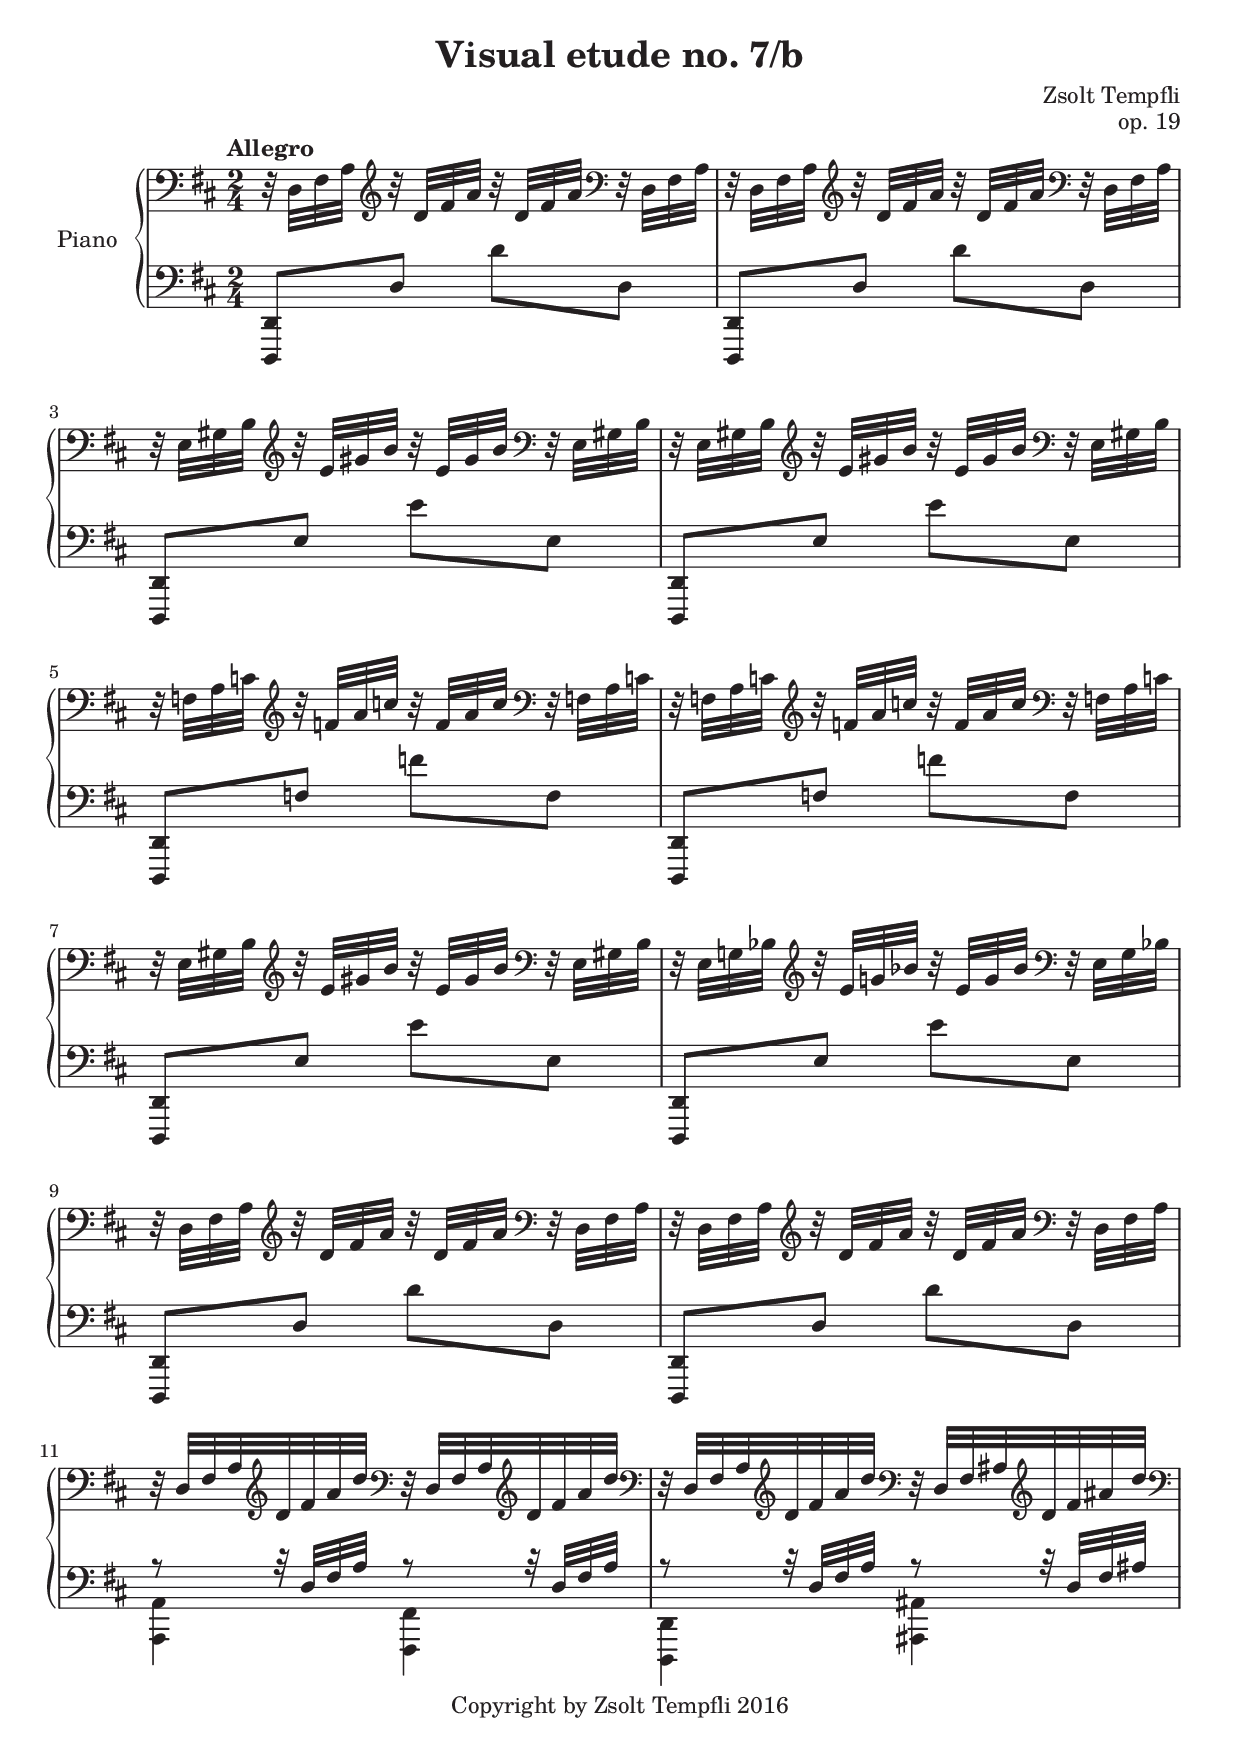 Zsolt Tempfli: Visual Etude no. 7b, op. 19 for piano